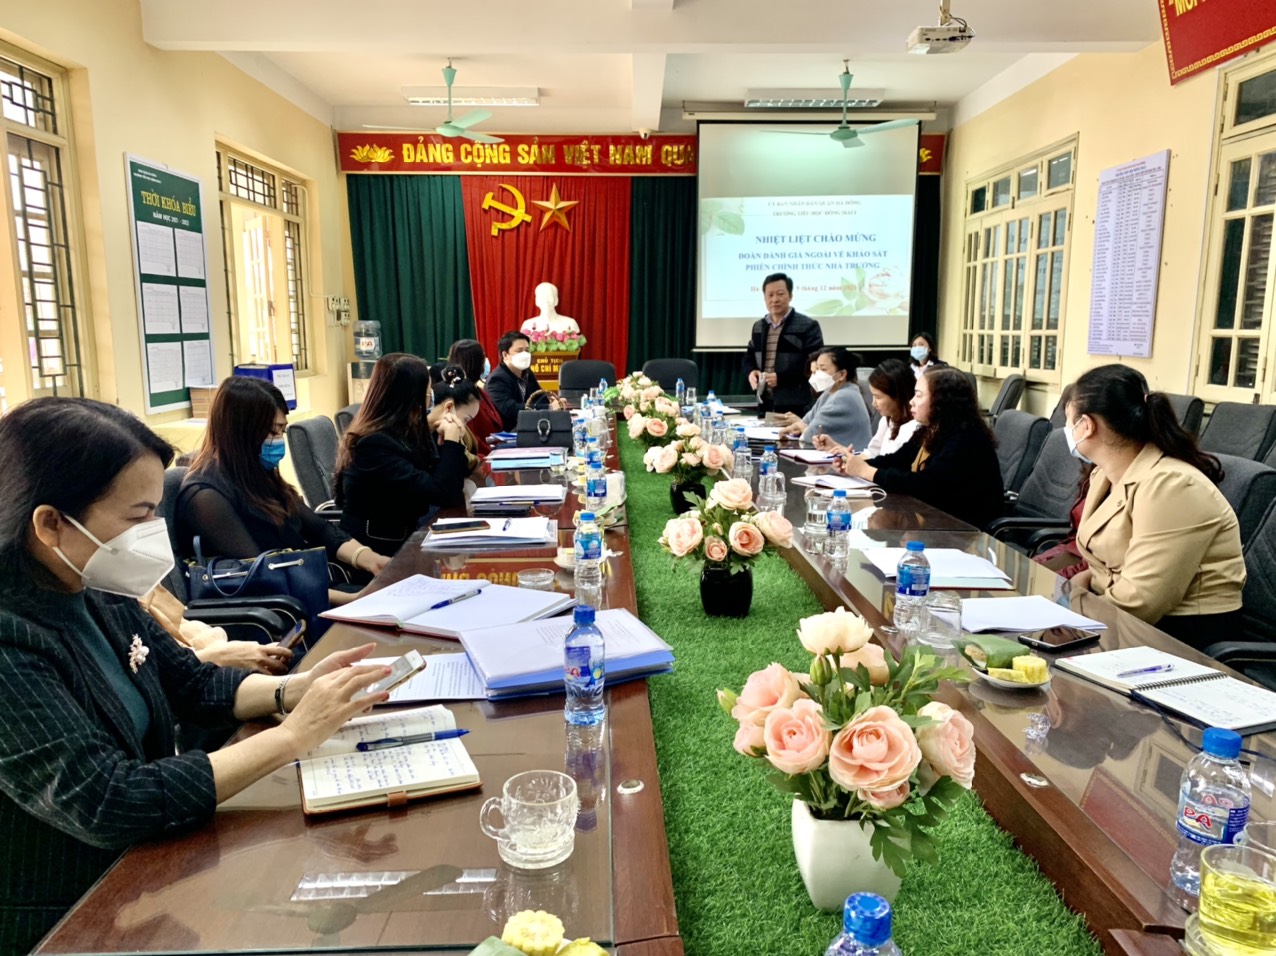 Trường Tiểu học Đồng Mai I đón Đoàn đánh giá ngoài của thành phố Hà Nội về kiểm định chất lượng giáo dục cấp độ 2 và công nhận lại trường đạt chuẩn Quốc gia mức độ 1